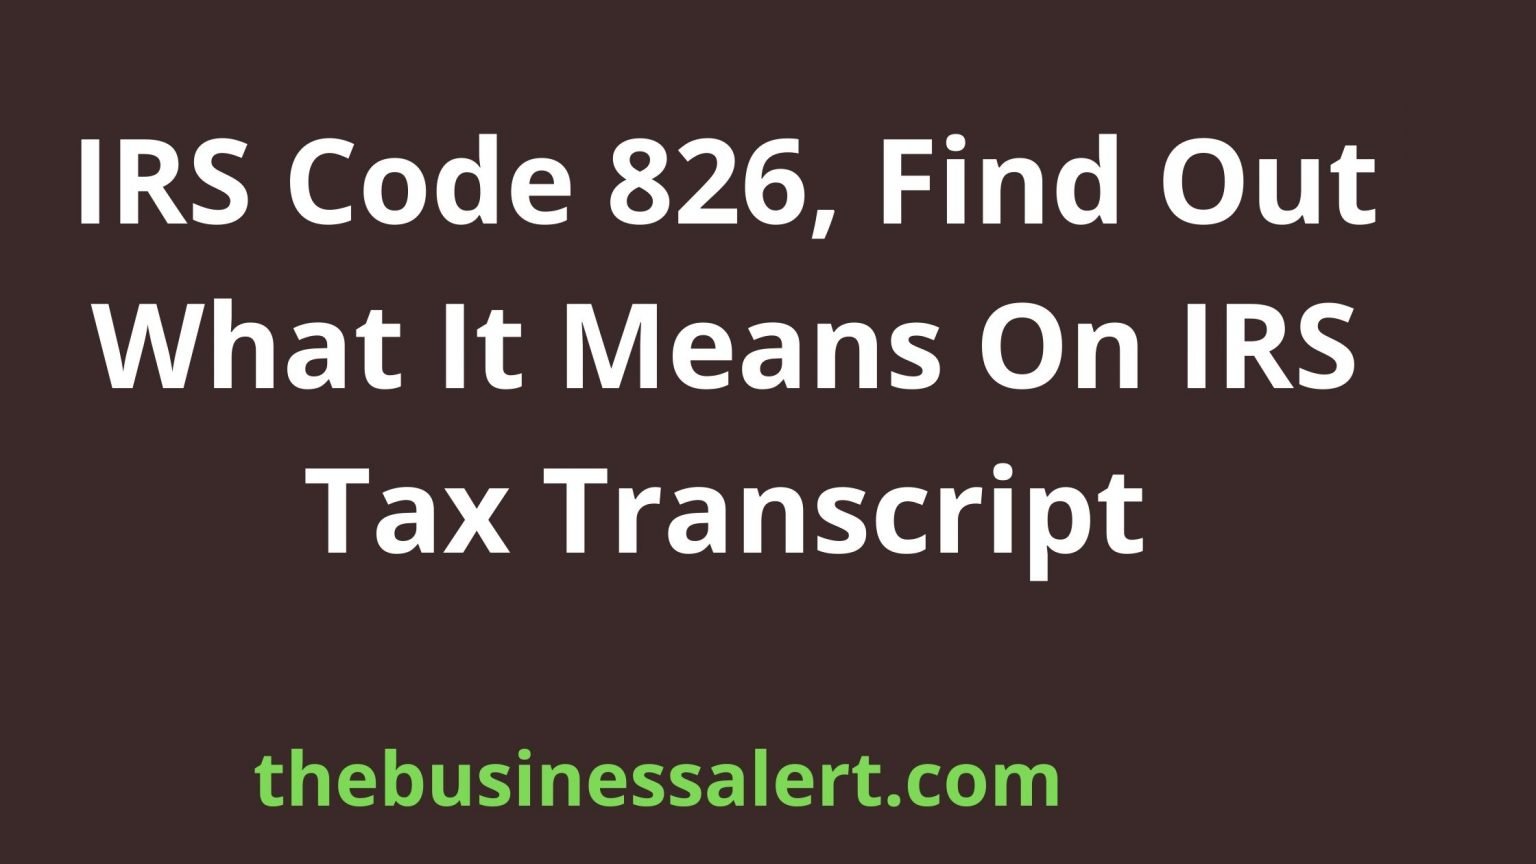 IRS Code 826 1536x864 